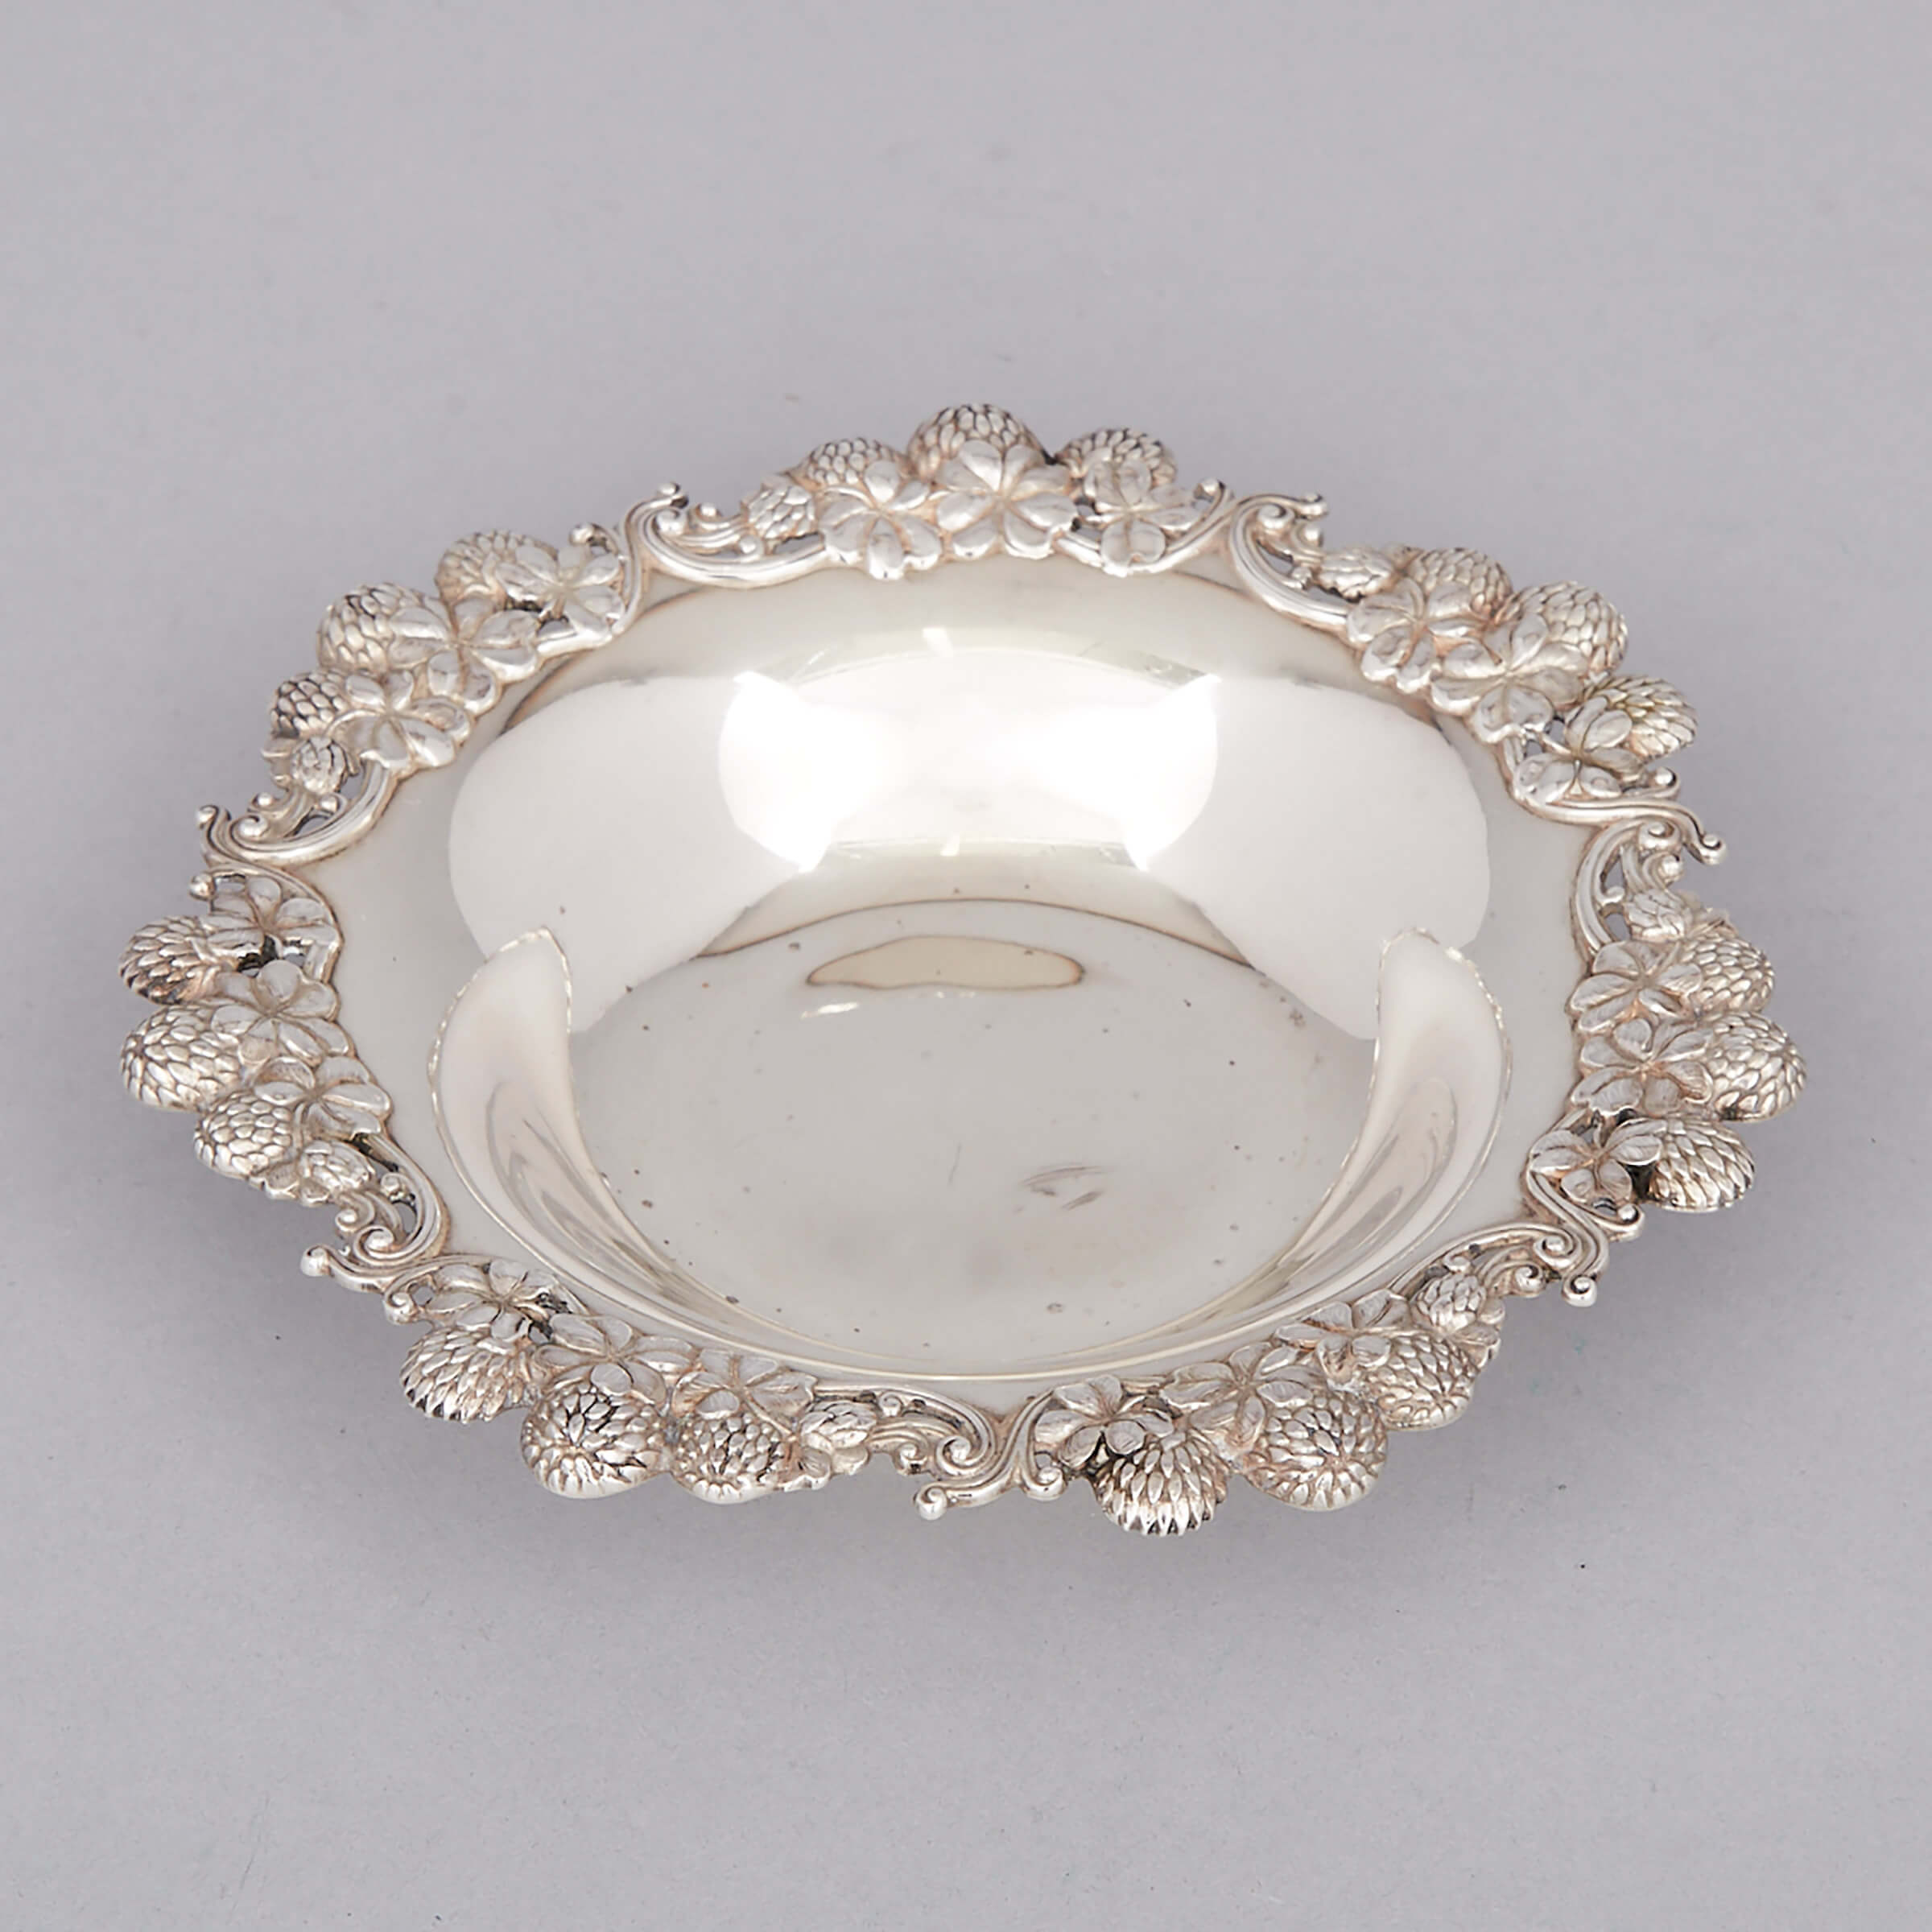 American Silver ‘Chrysanthemum’ Small Circular Dish, Tiffany & Co., New York, N.Y., c.1891-1902